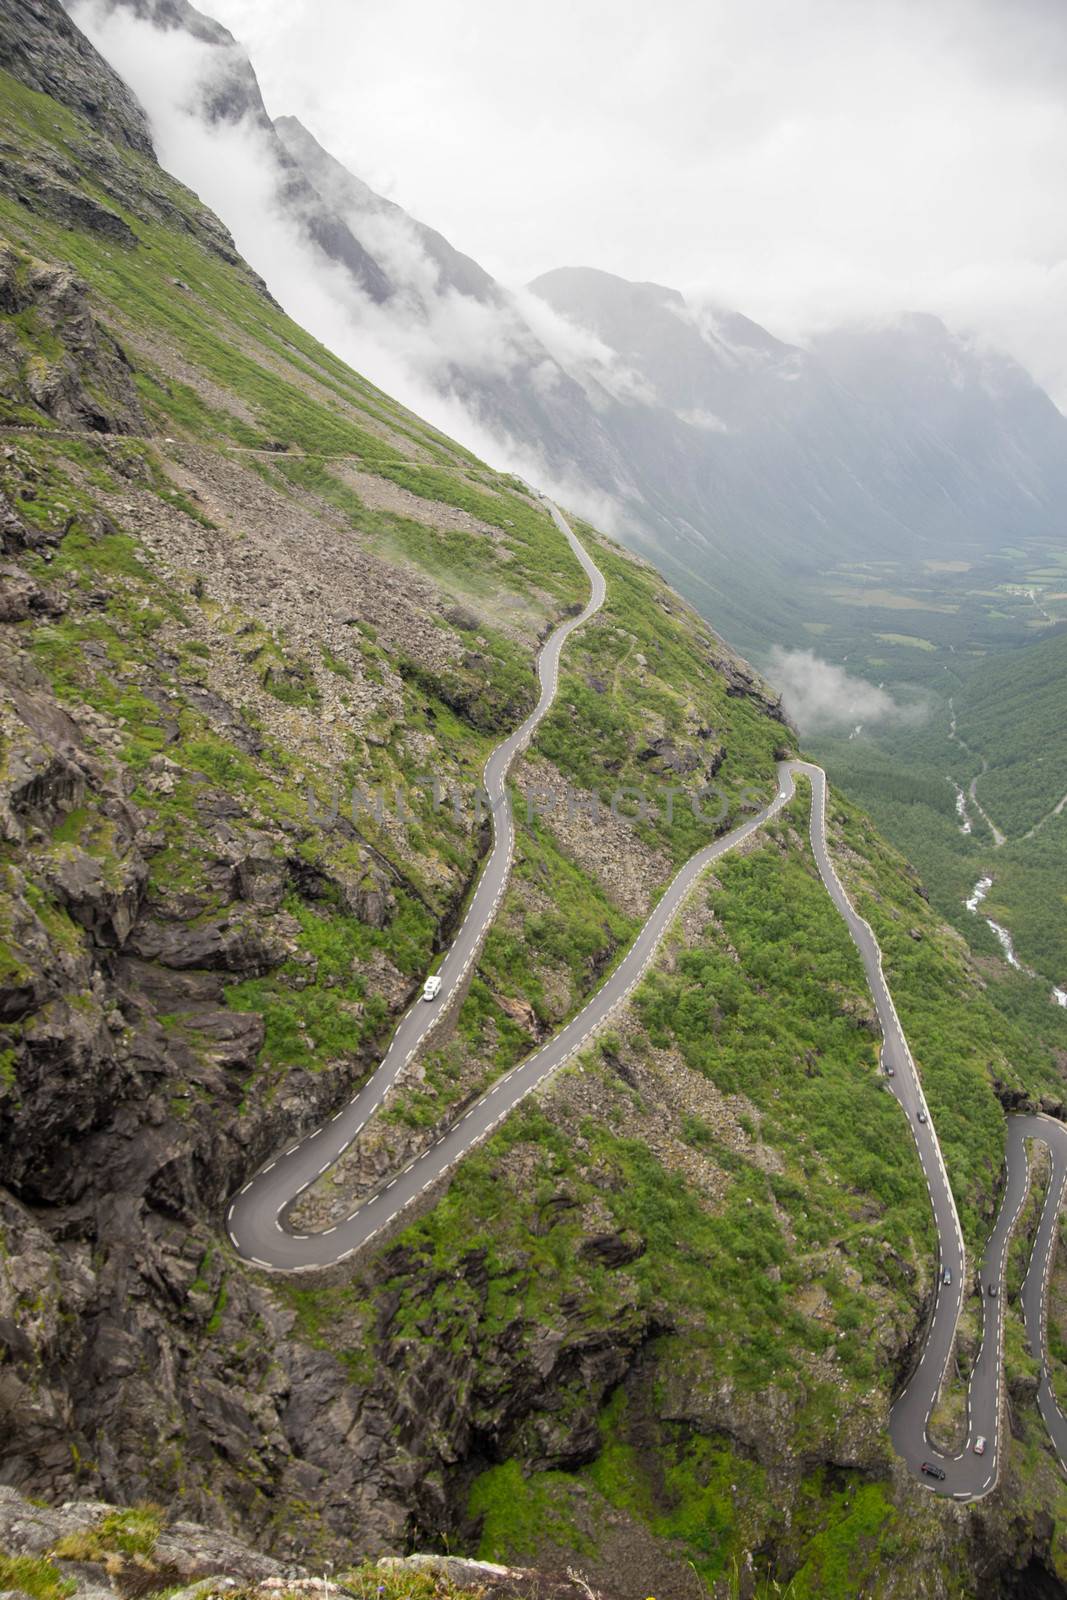 Trollstigen troll path in Norway from above by javax